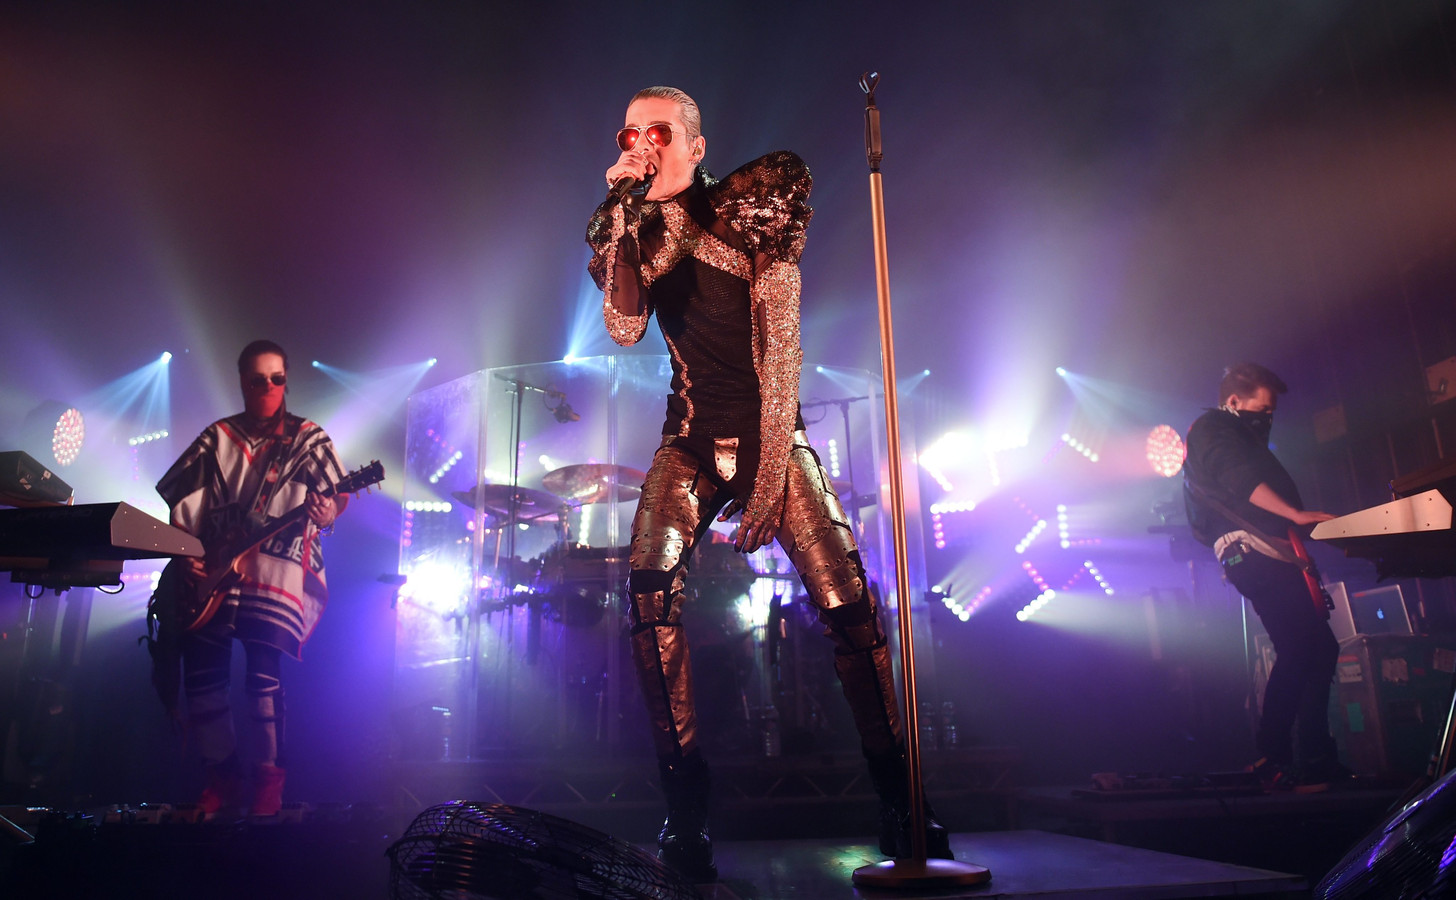 Duitse band Tokio Hotel naar Arnhem voor optreden in Musis ...